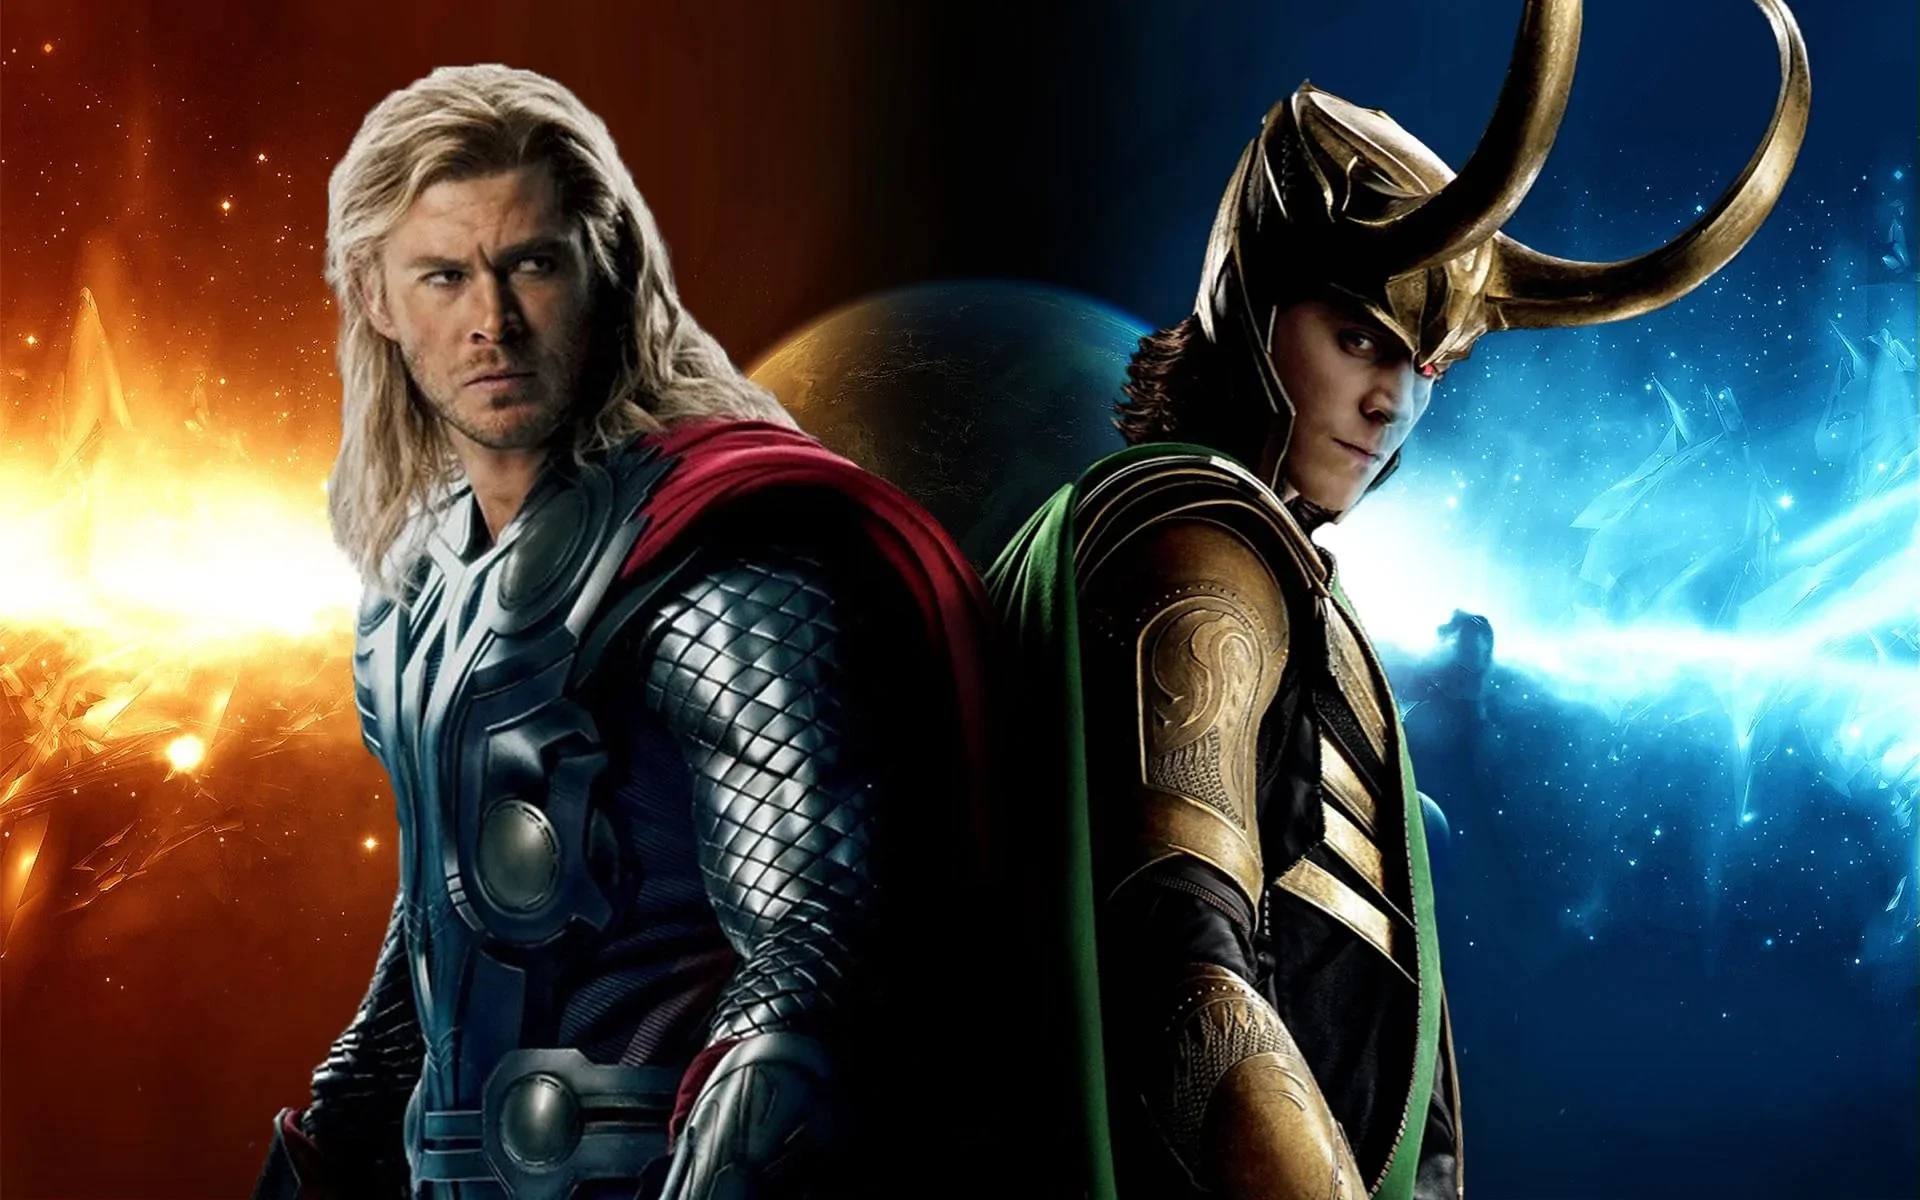 Nie tylko Thor! Kto był kim w nordyckiej mitologii i gdzie pojawia się w popkulturze?